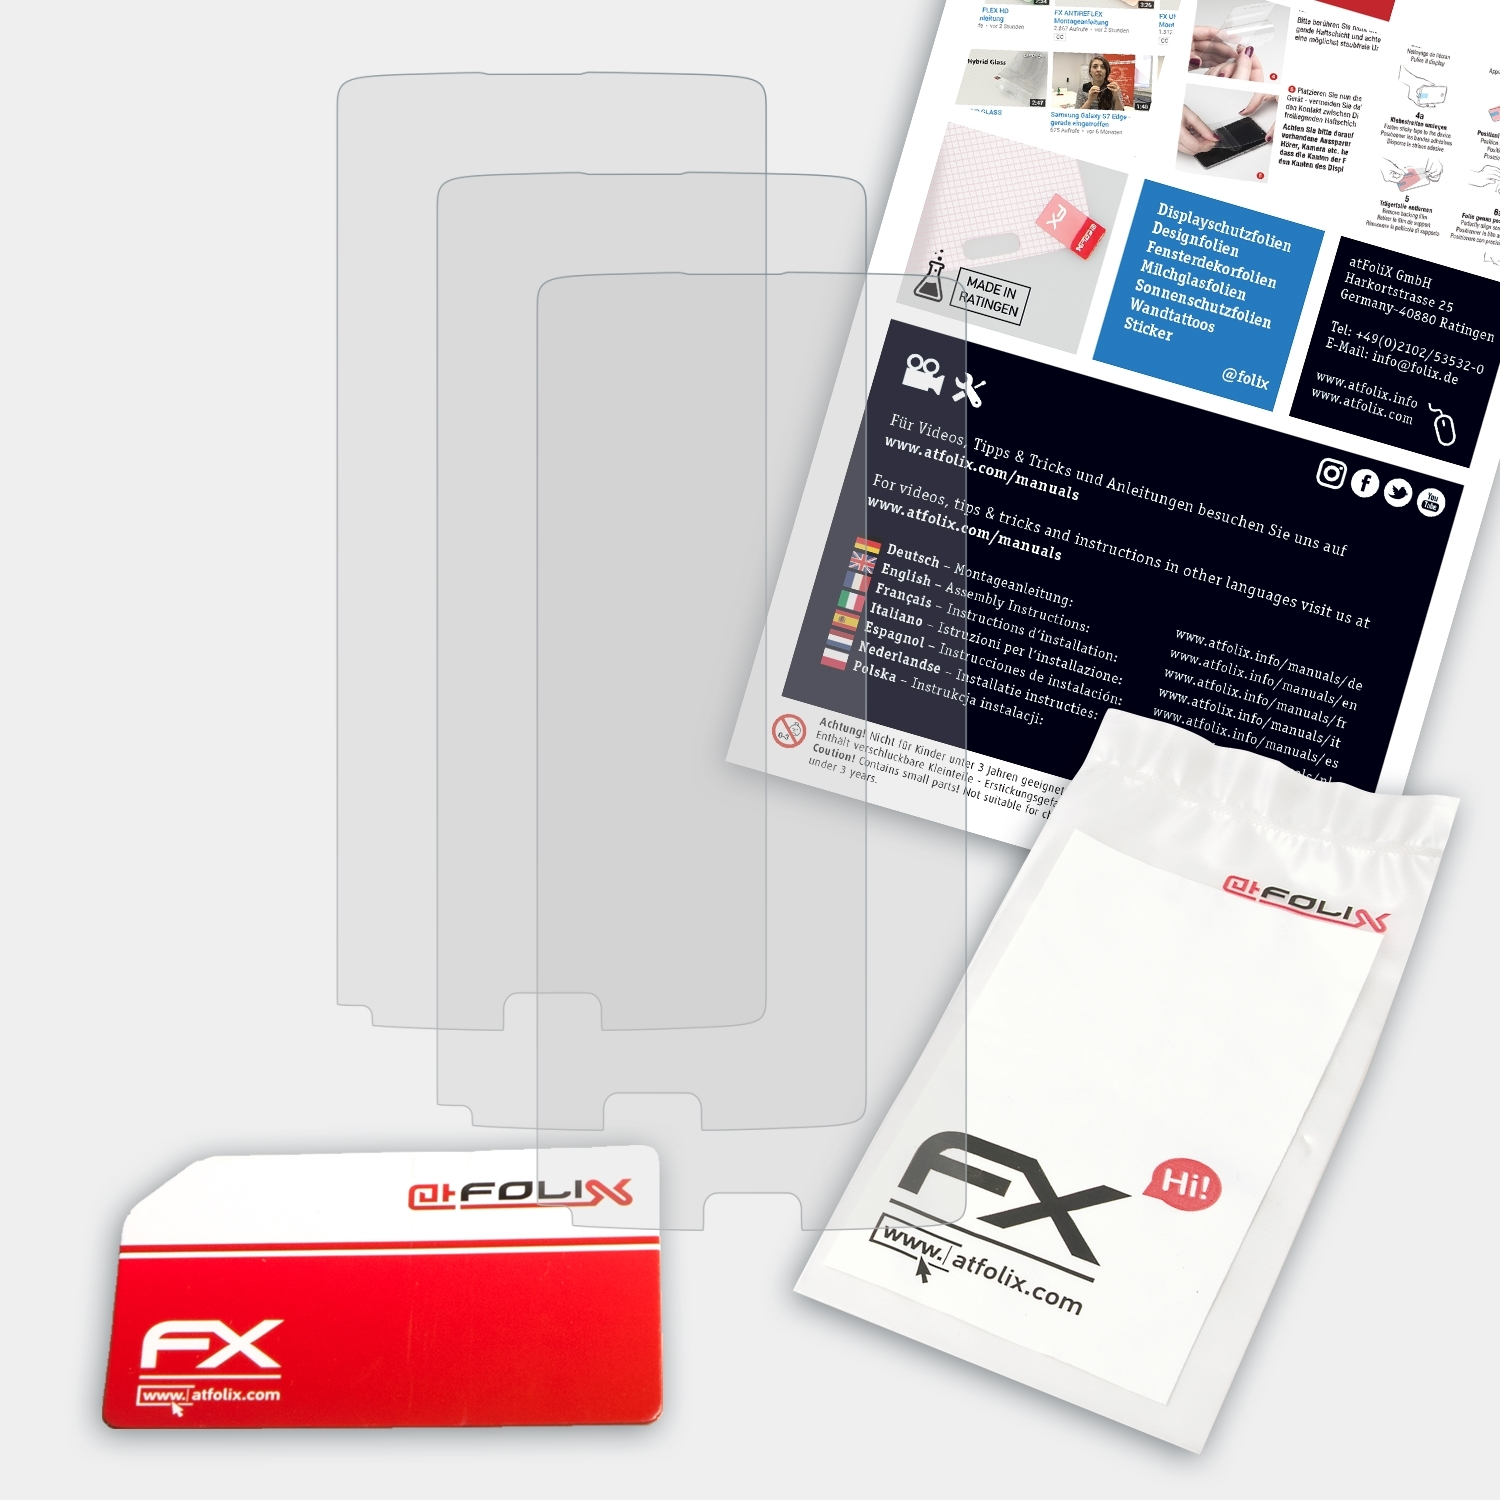 ATFOLIX S9 Displayschutz(für 3x Plus) Homtom FX-Antireflex